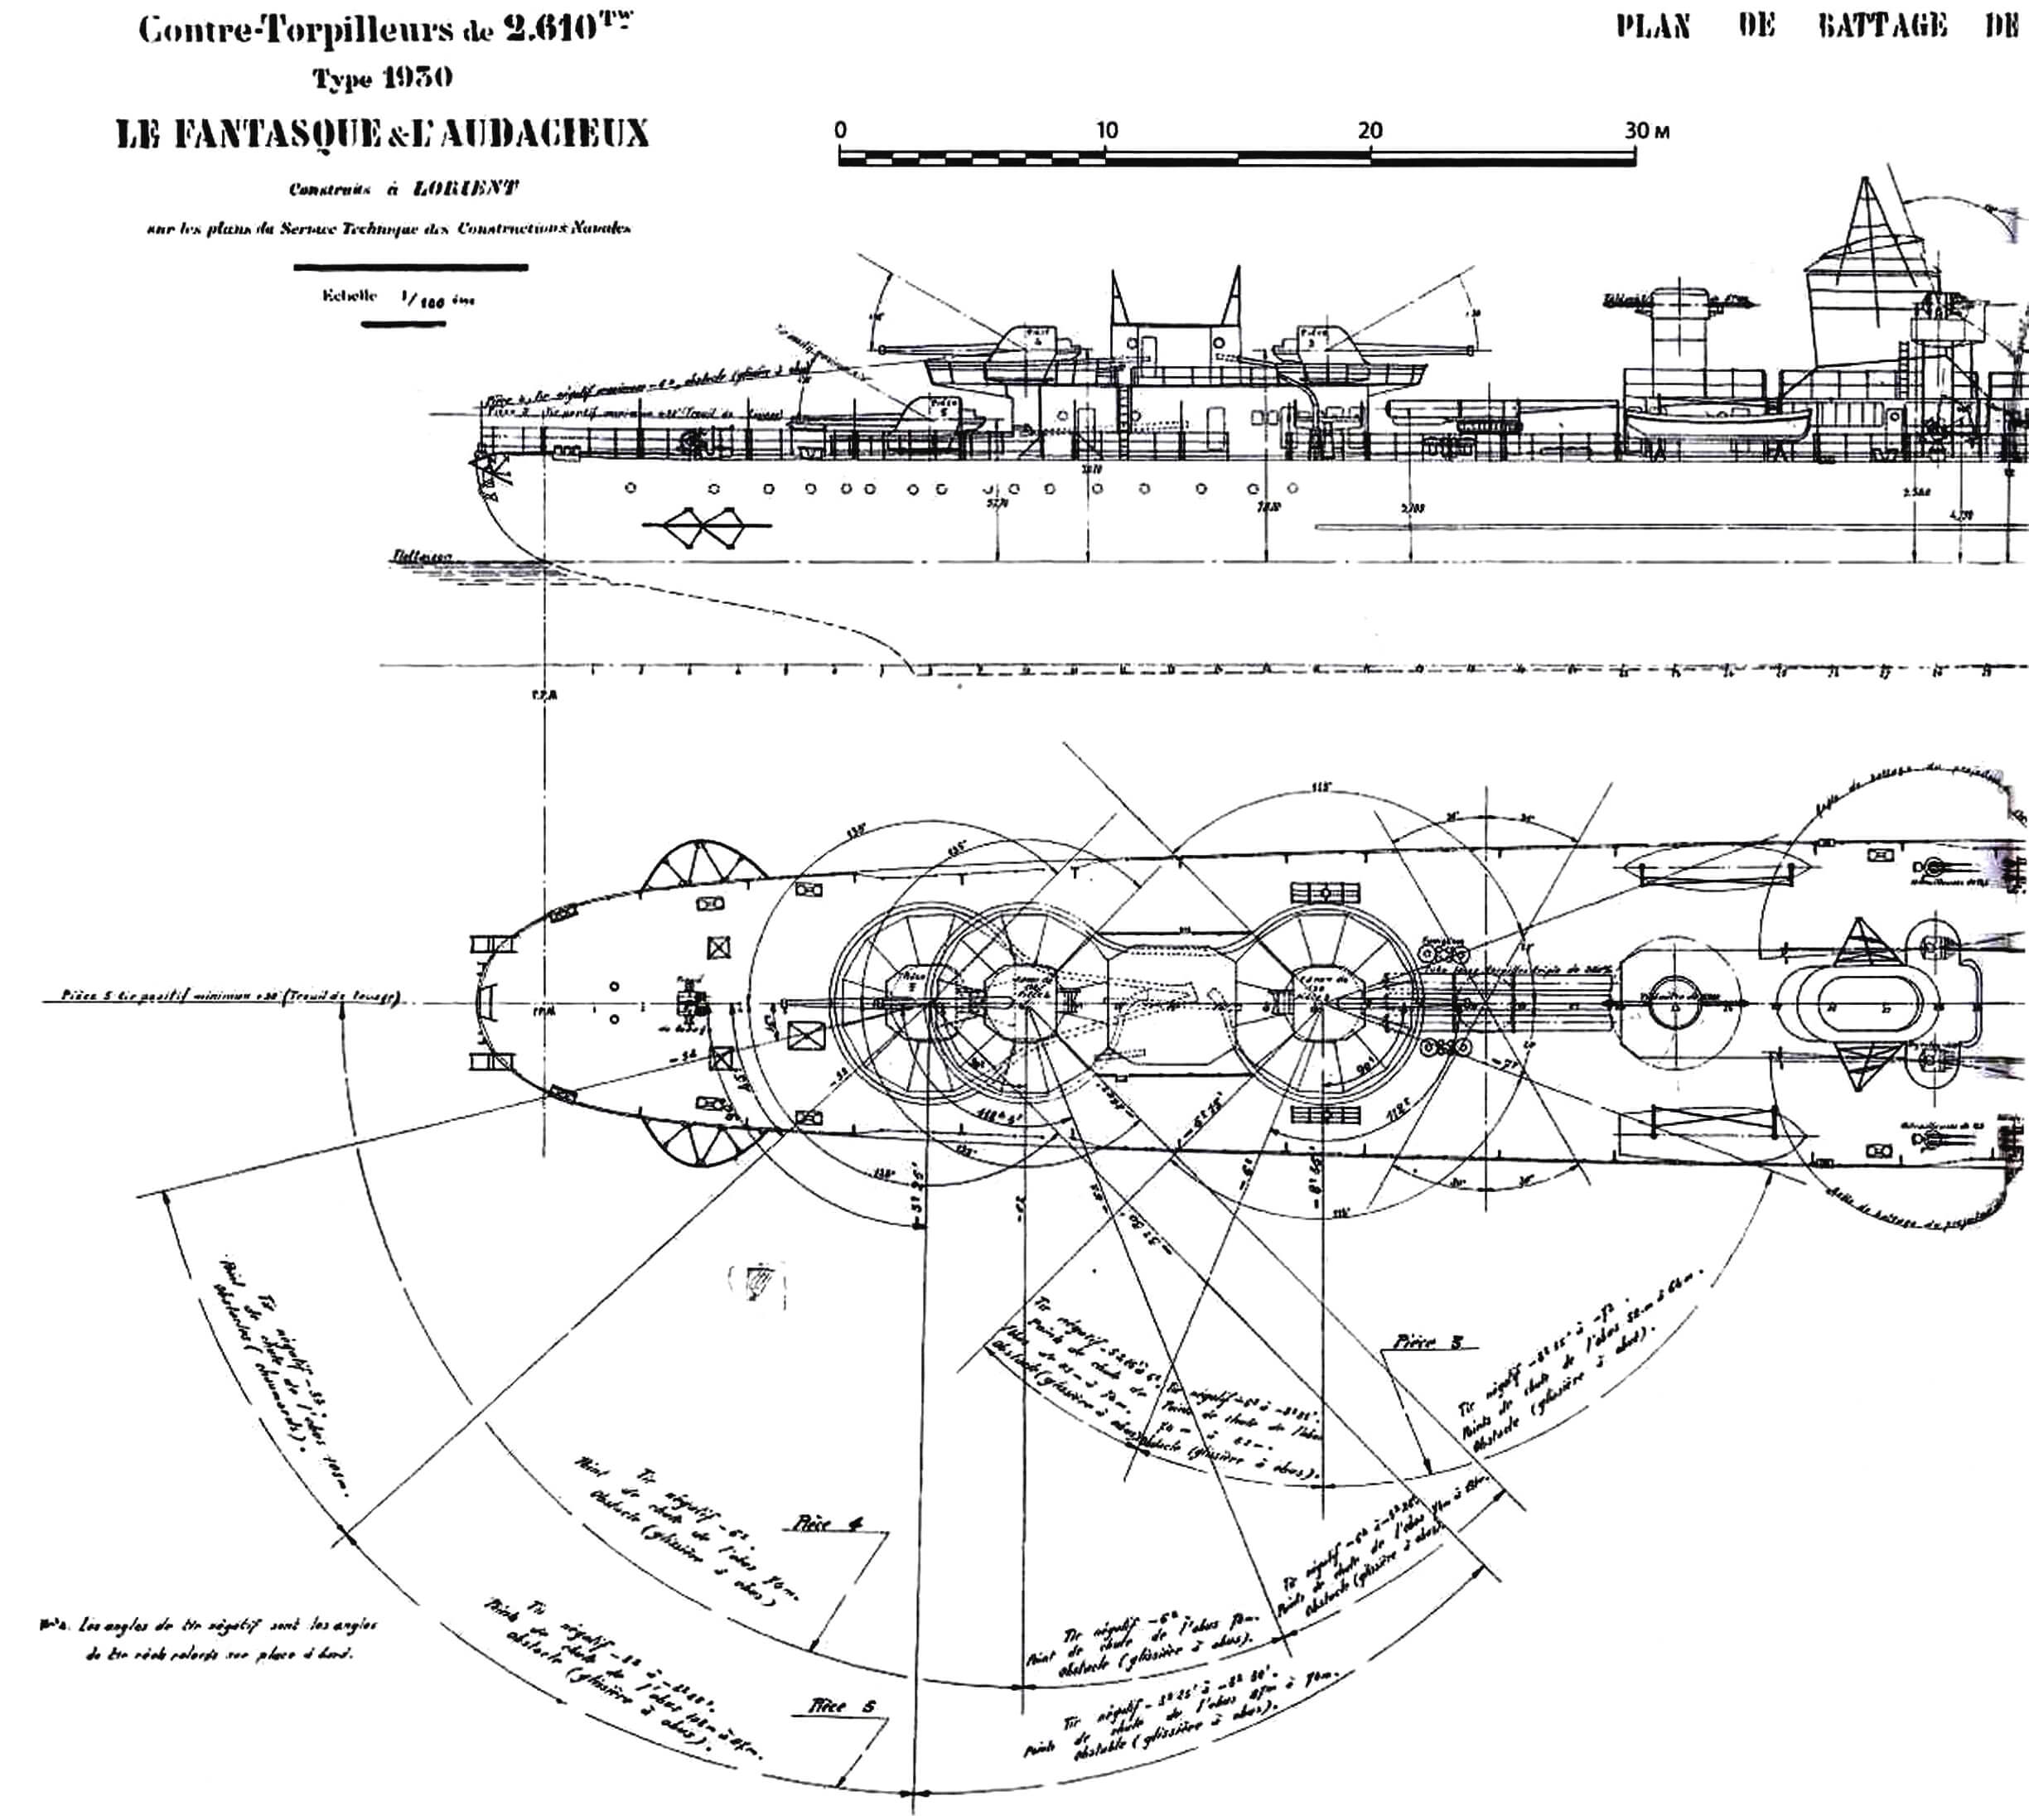 Схема размещения вооружения на лидерах типа «Ле Фантаск» с указанием углов обстрела (копия оригинального чертежа)